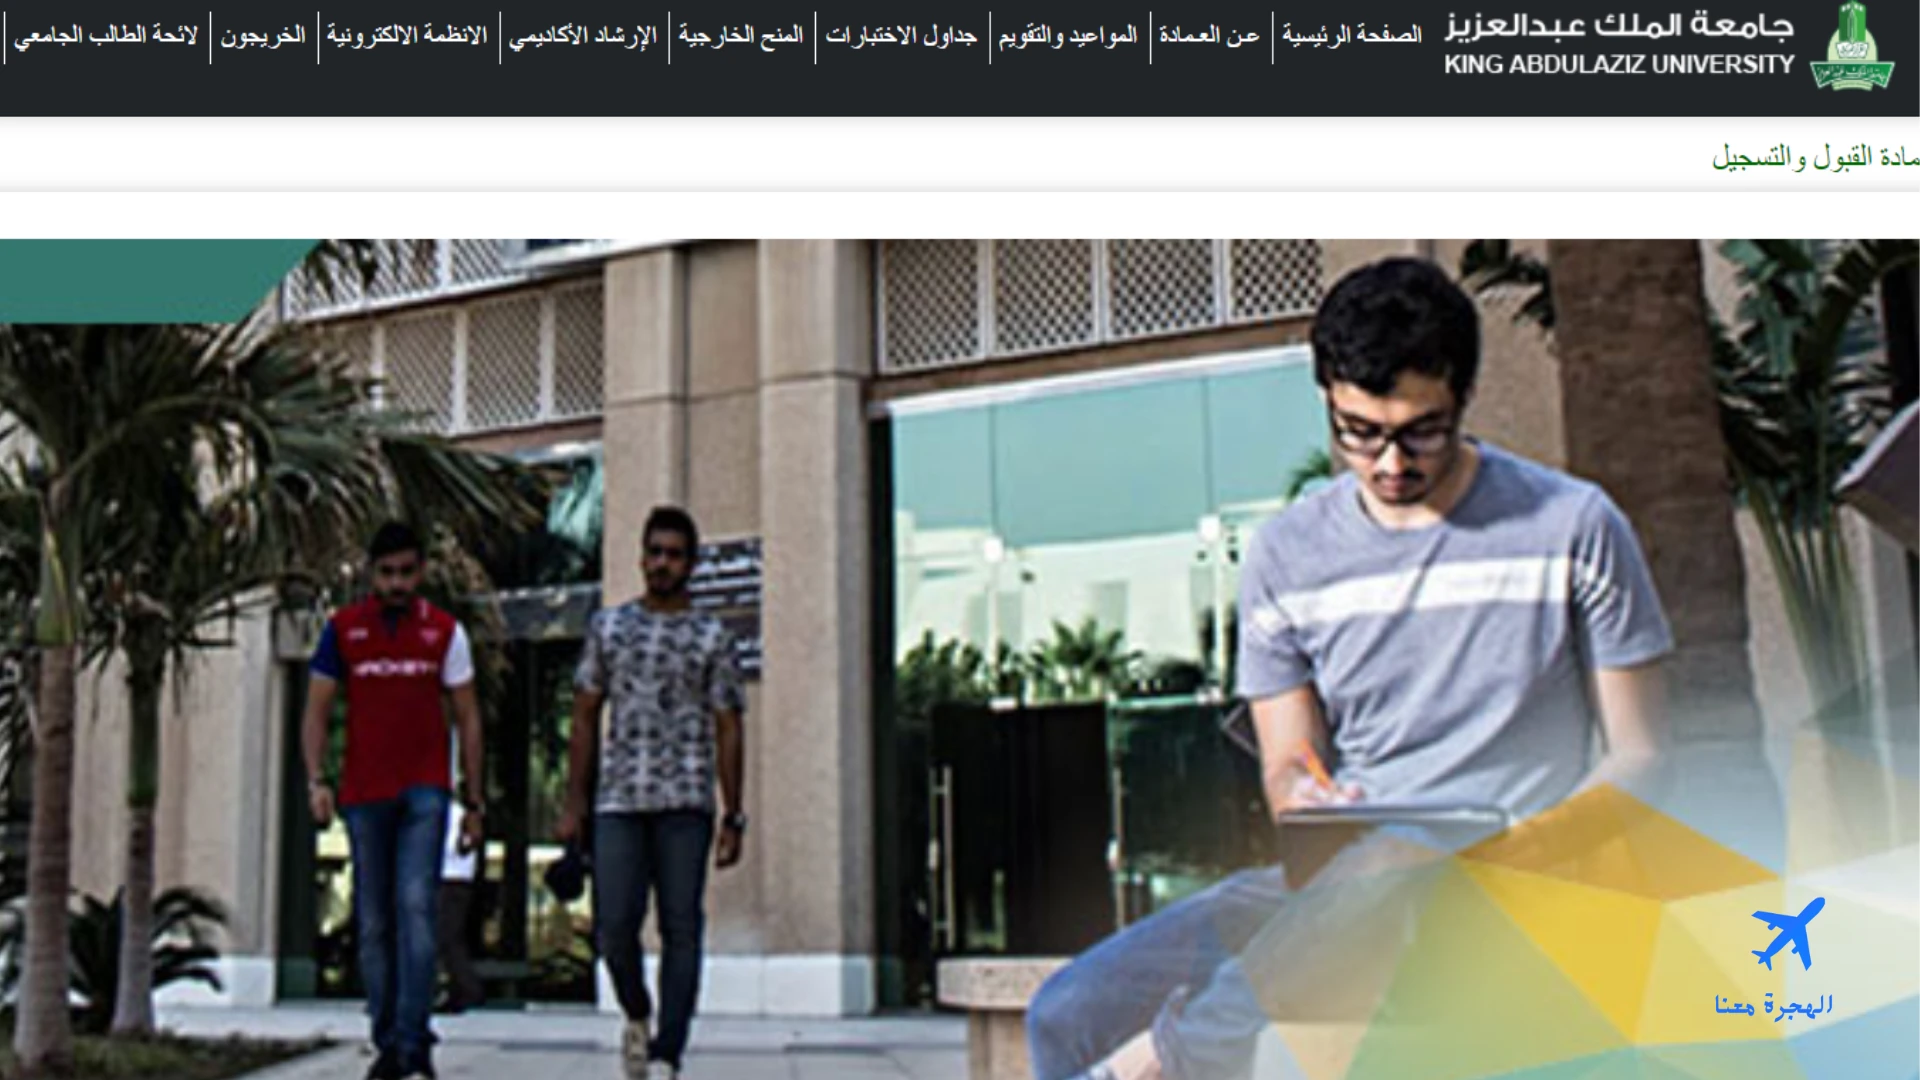 صورة من الموقع الإلكتروني الذي من خلاله يتم التحويل الداخلي جامعة الملك عبدالعزيز